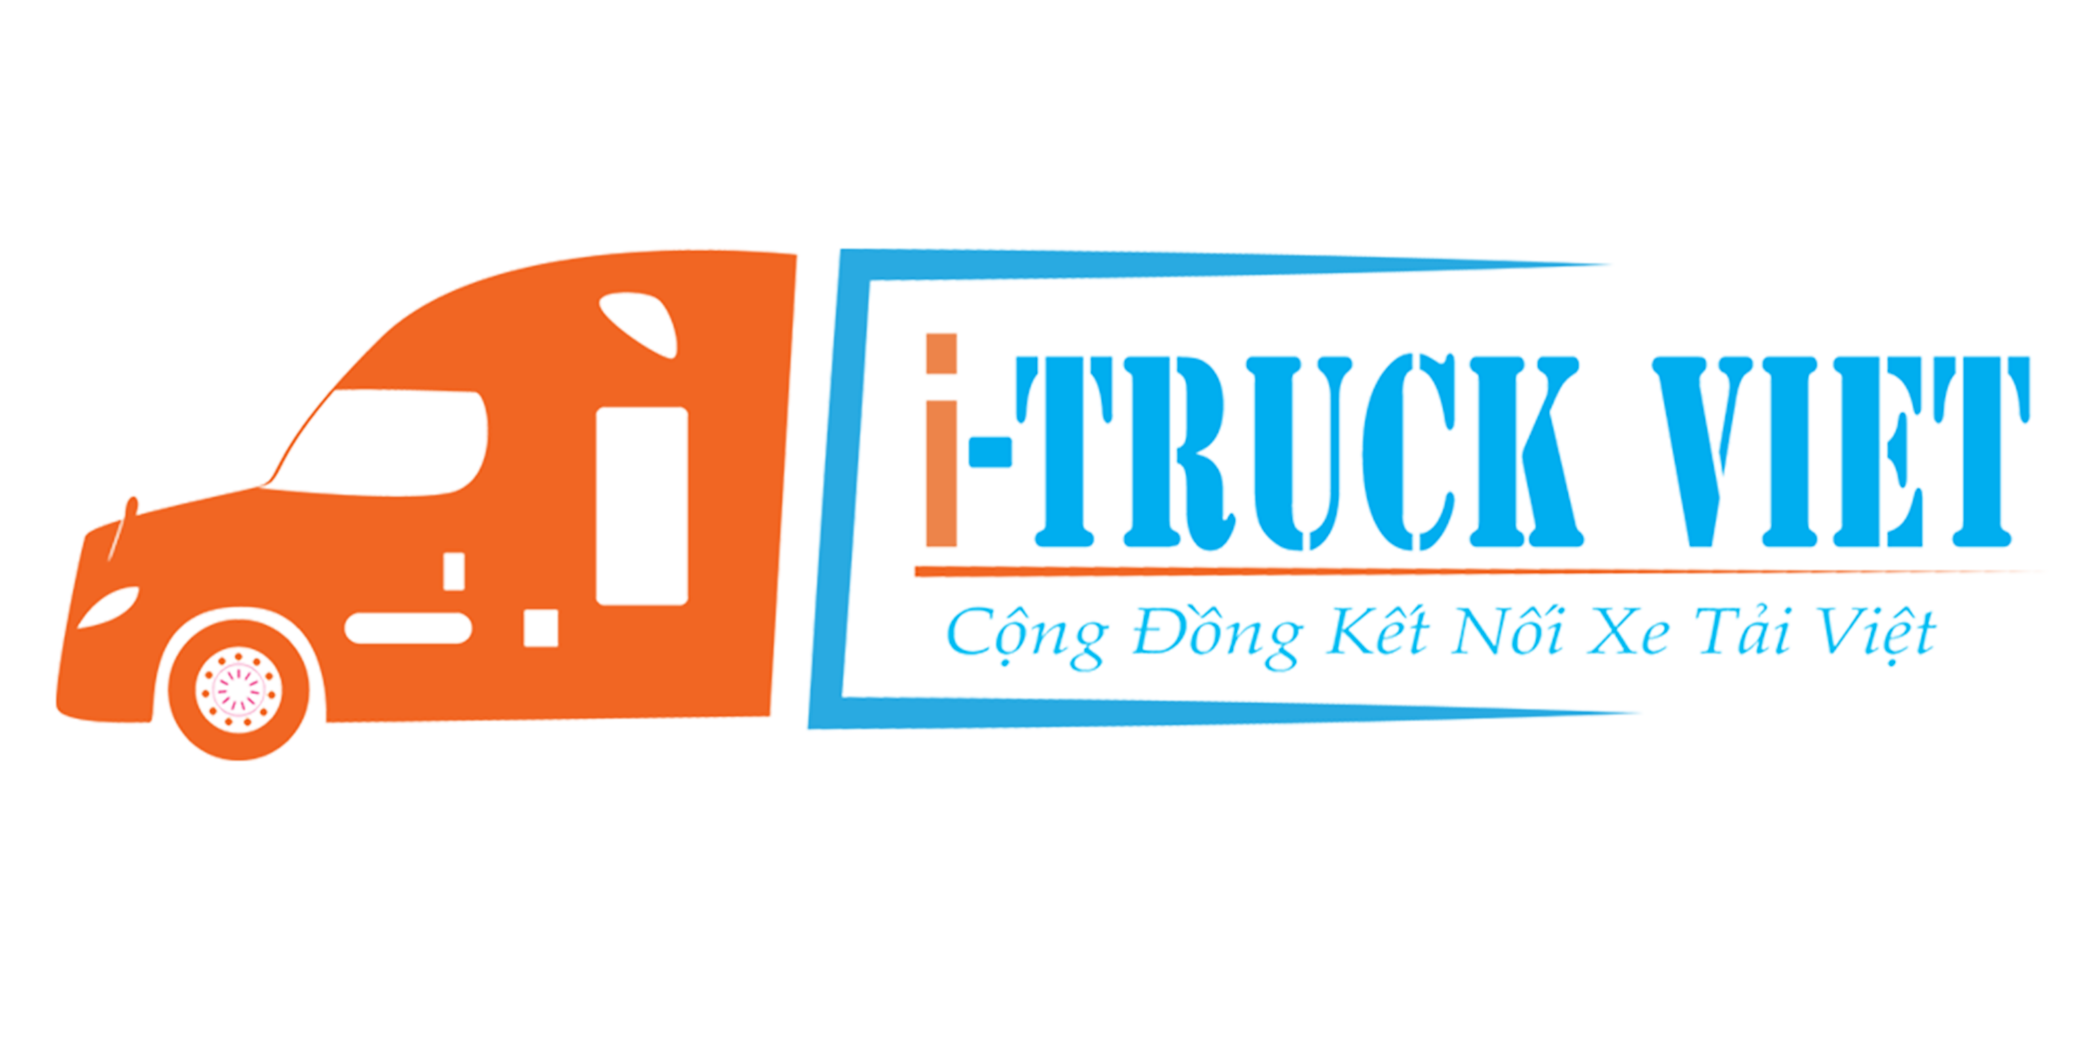 Truck Việt ra đời với mong muốn,nỗ lực cung cấp 14-16-logo-500-x-250-png